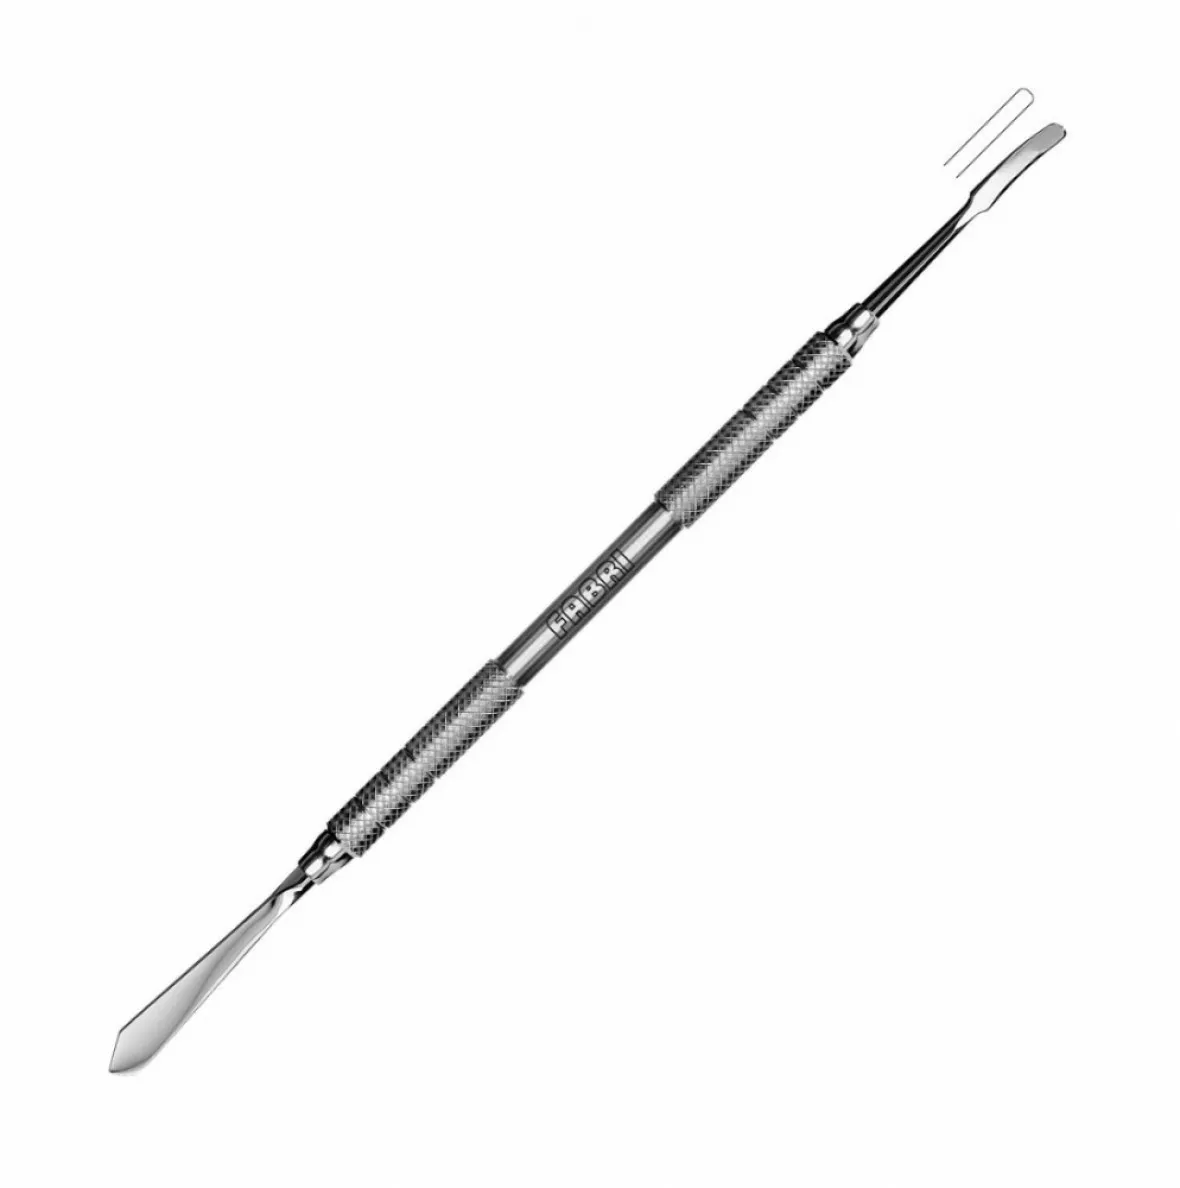 1805-Моделировочный инструмент широкий для металлокерамики и воска, лопатка вогнутая, ручка 6 мм